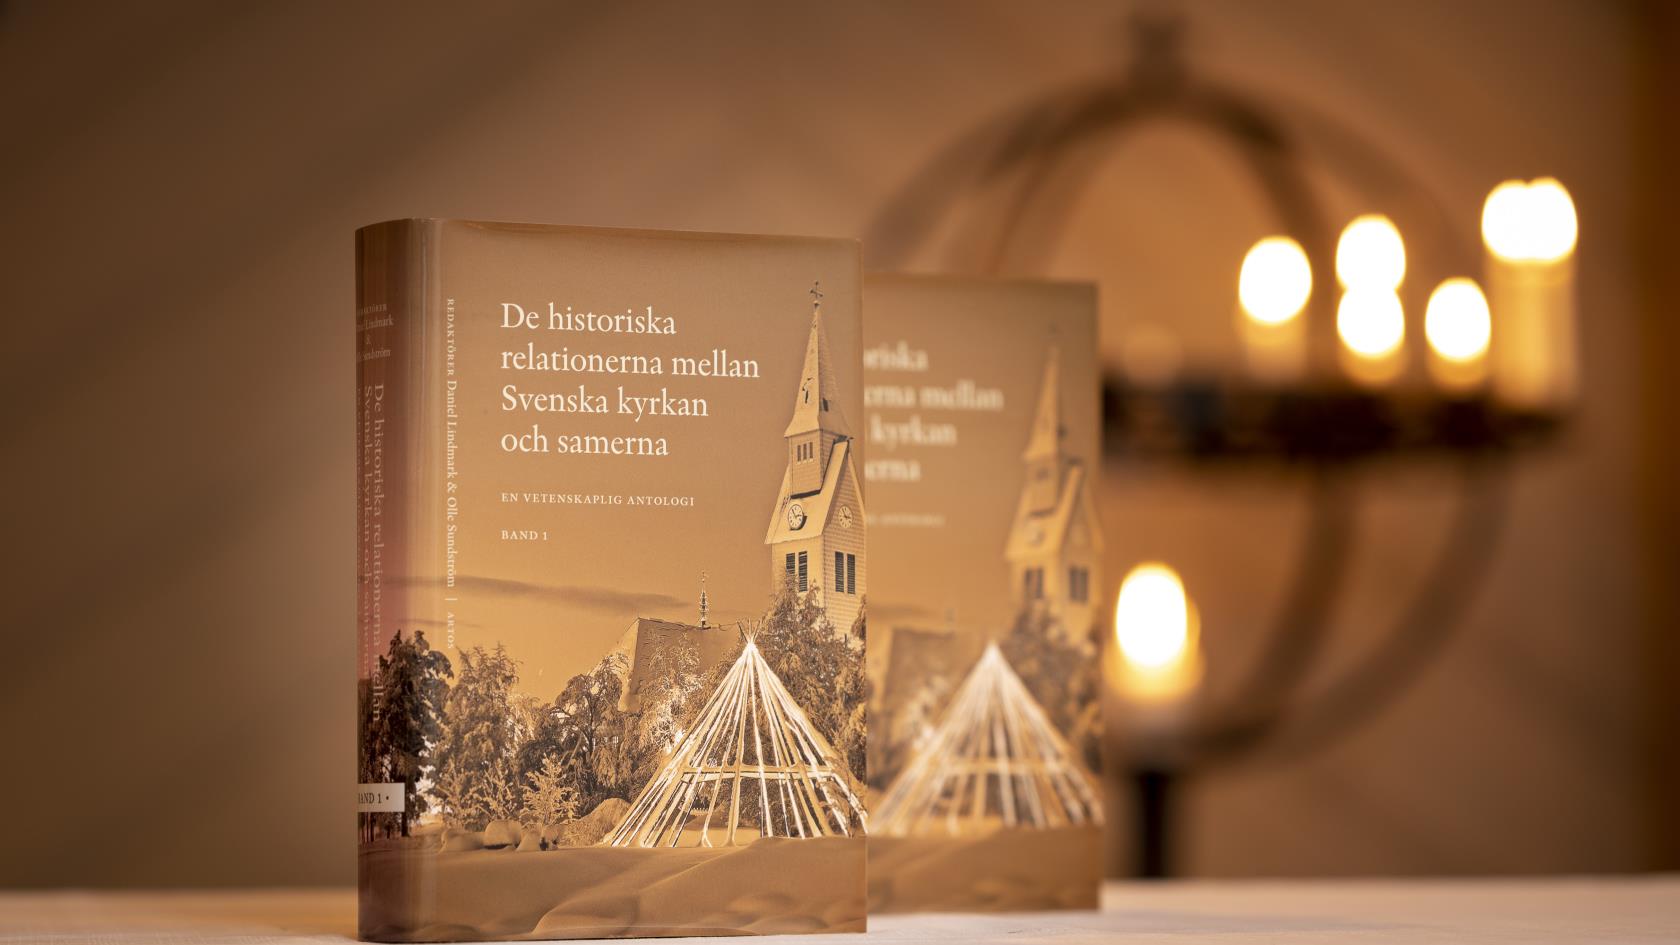 Två exemplar av boken De historiska relationerna mellan Svenska kyrkan och samerna står uppställda i en kyrka.